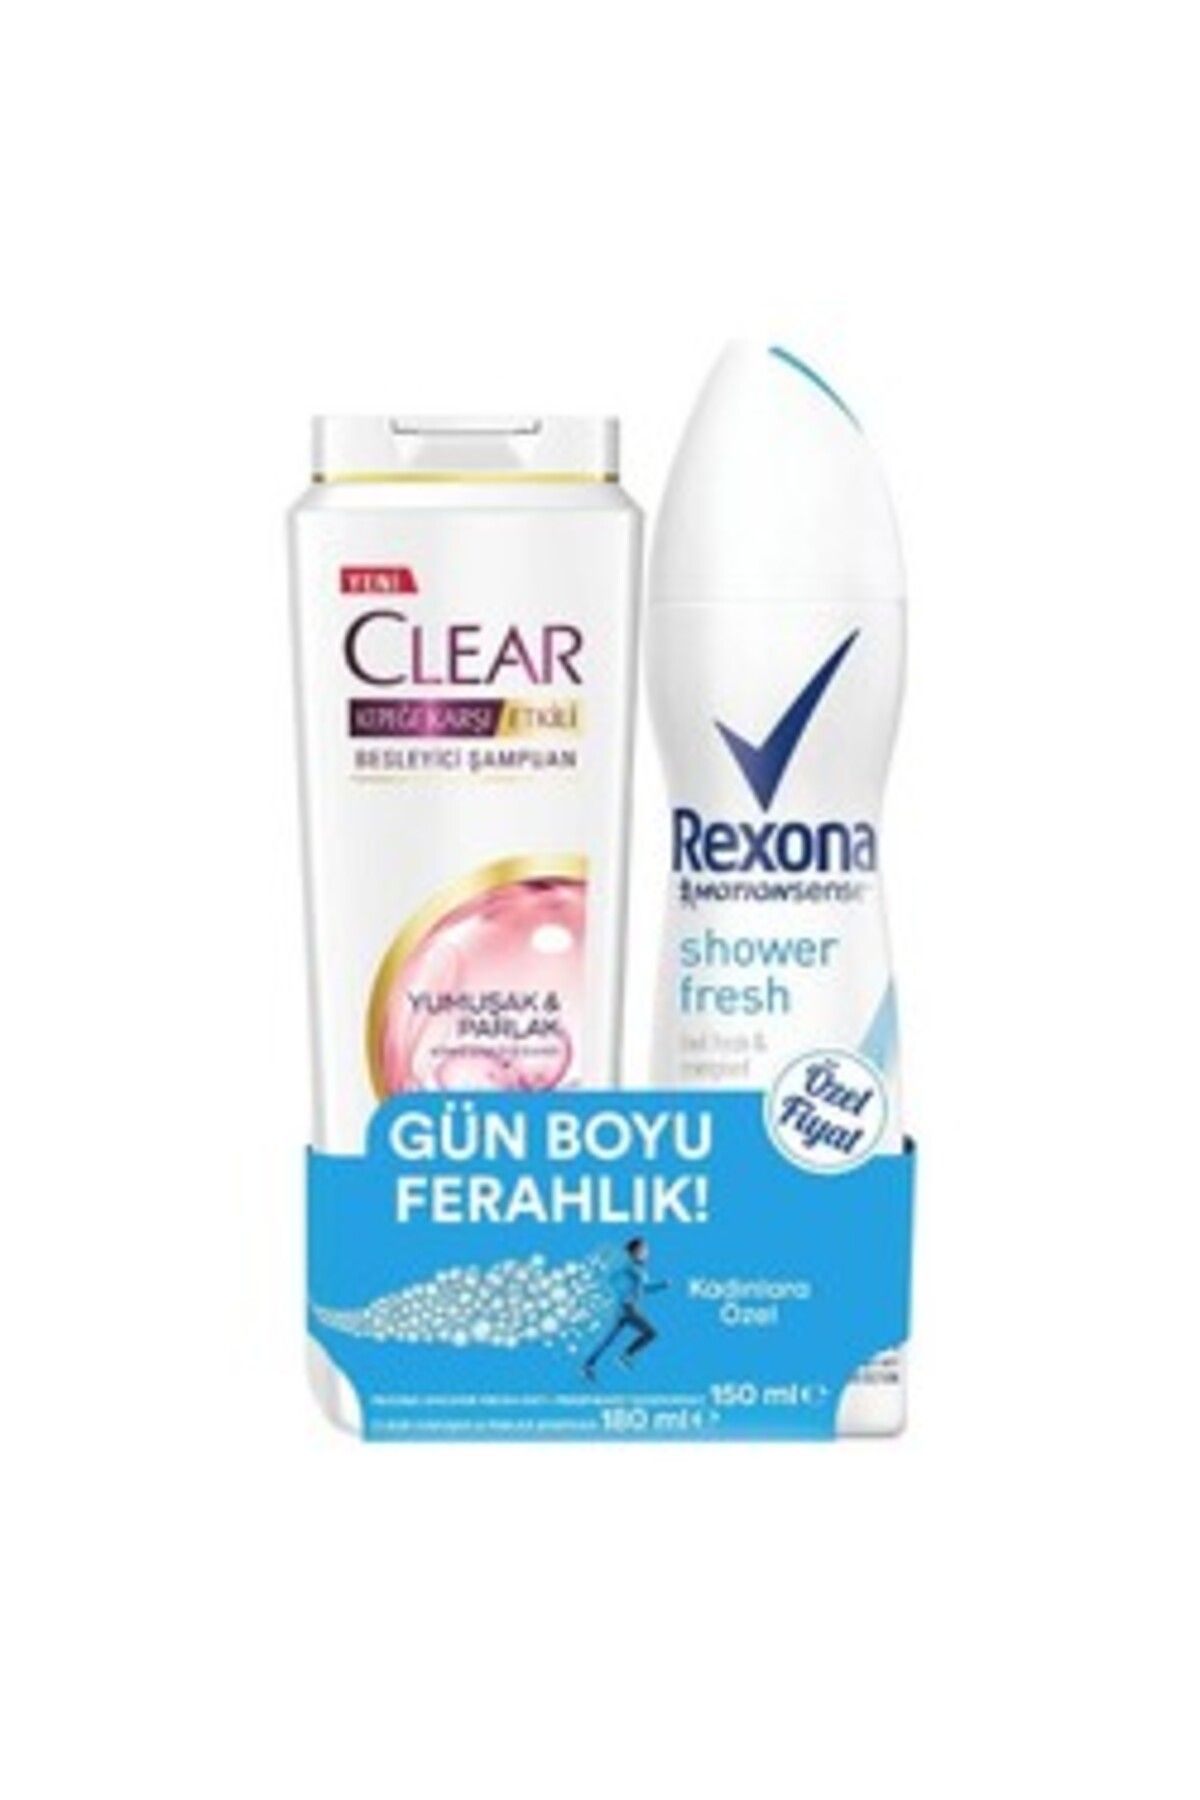 Rexona Kadın Deodorant 150 Ml + Clear Şampuan 185 Ml Set ( 1 ADET )